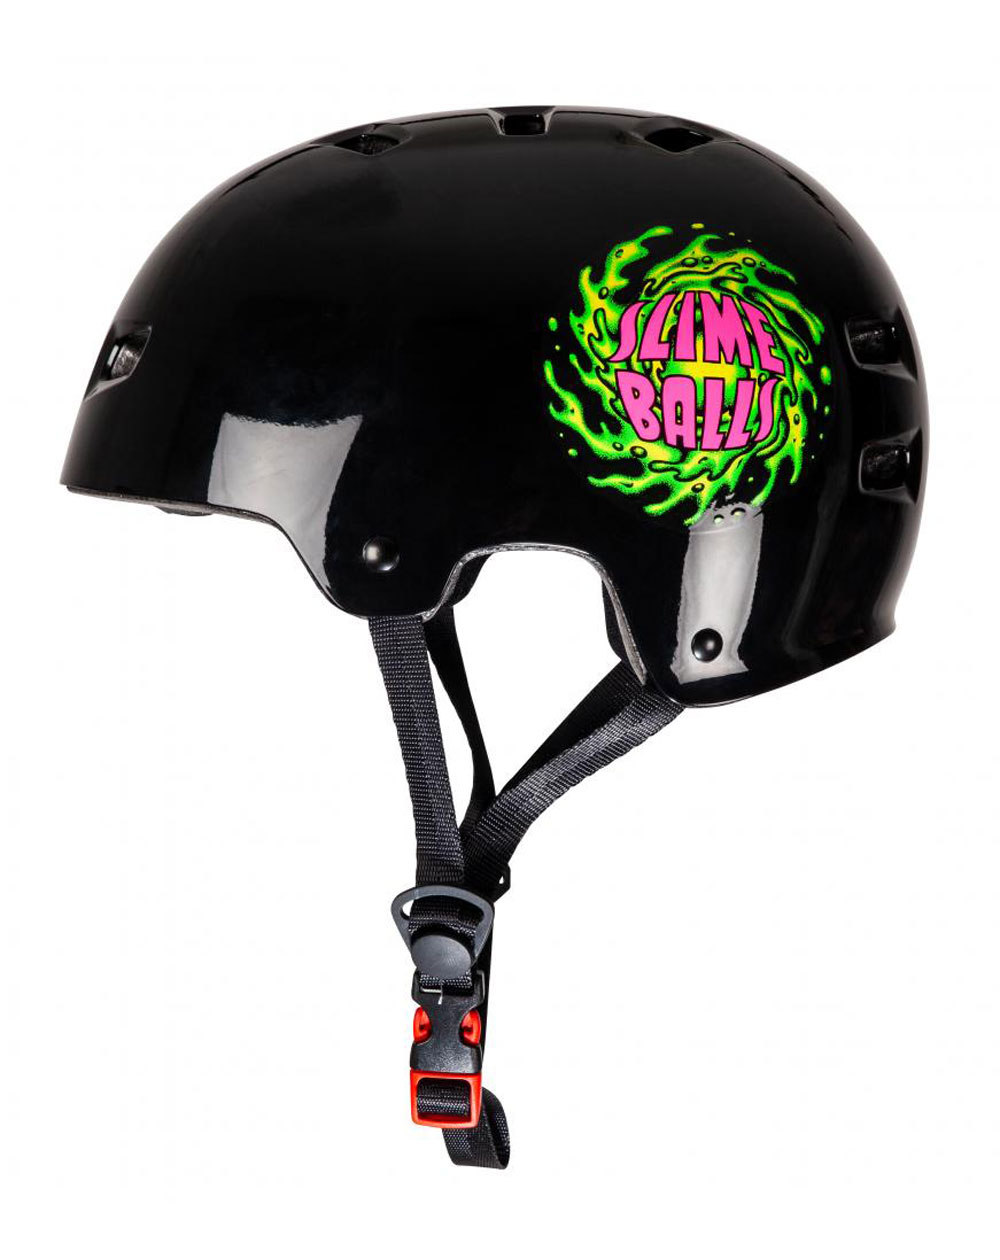 Bullet Safety Gear Casque Skateboard Bullet x Slime Balls Slime Logo Black